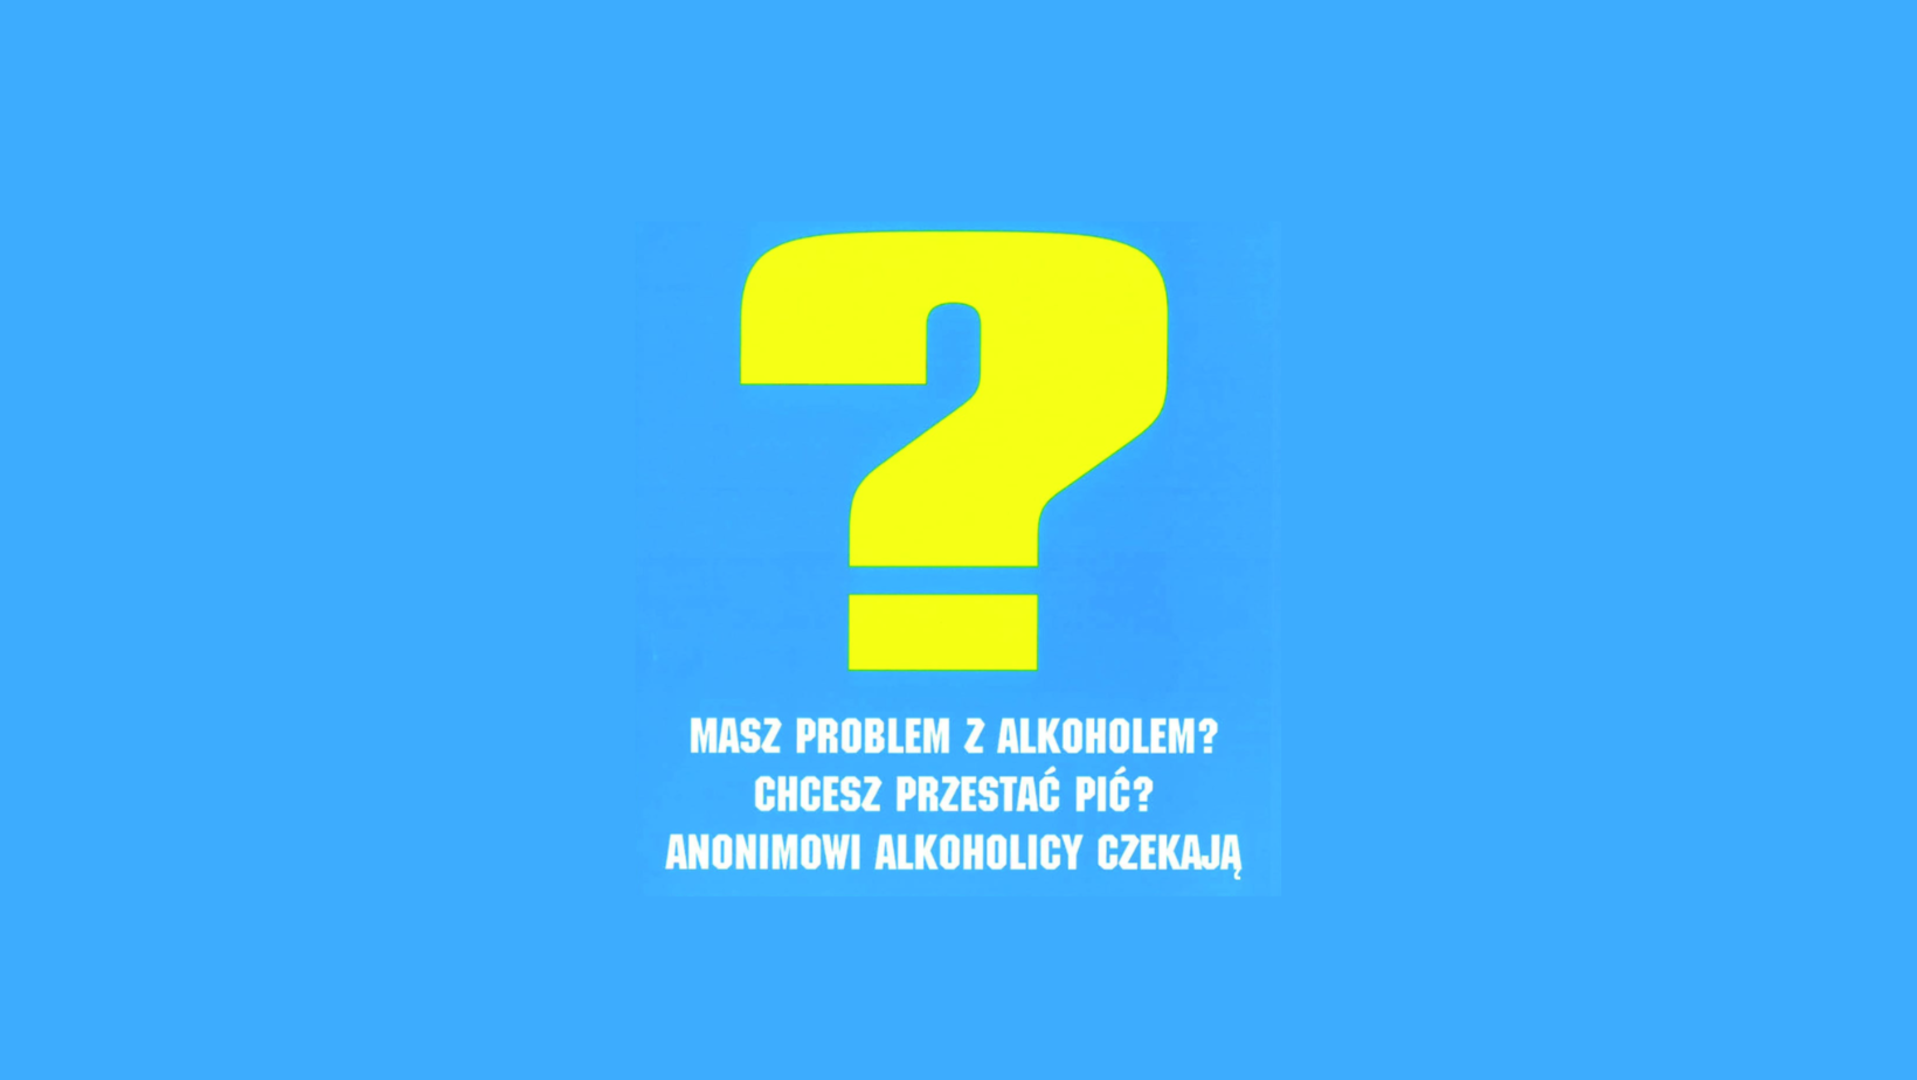 Żółty znak zapytania na błękitnym tle i biały napis "Masz problem z alkoholem? Chcesz przestać pić? Anonimowi alkoholicy czekają.